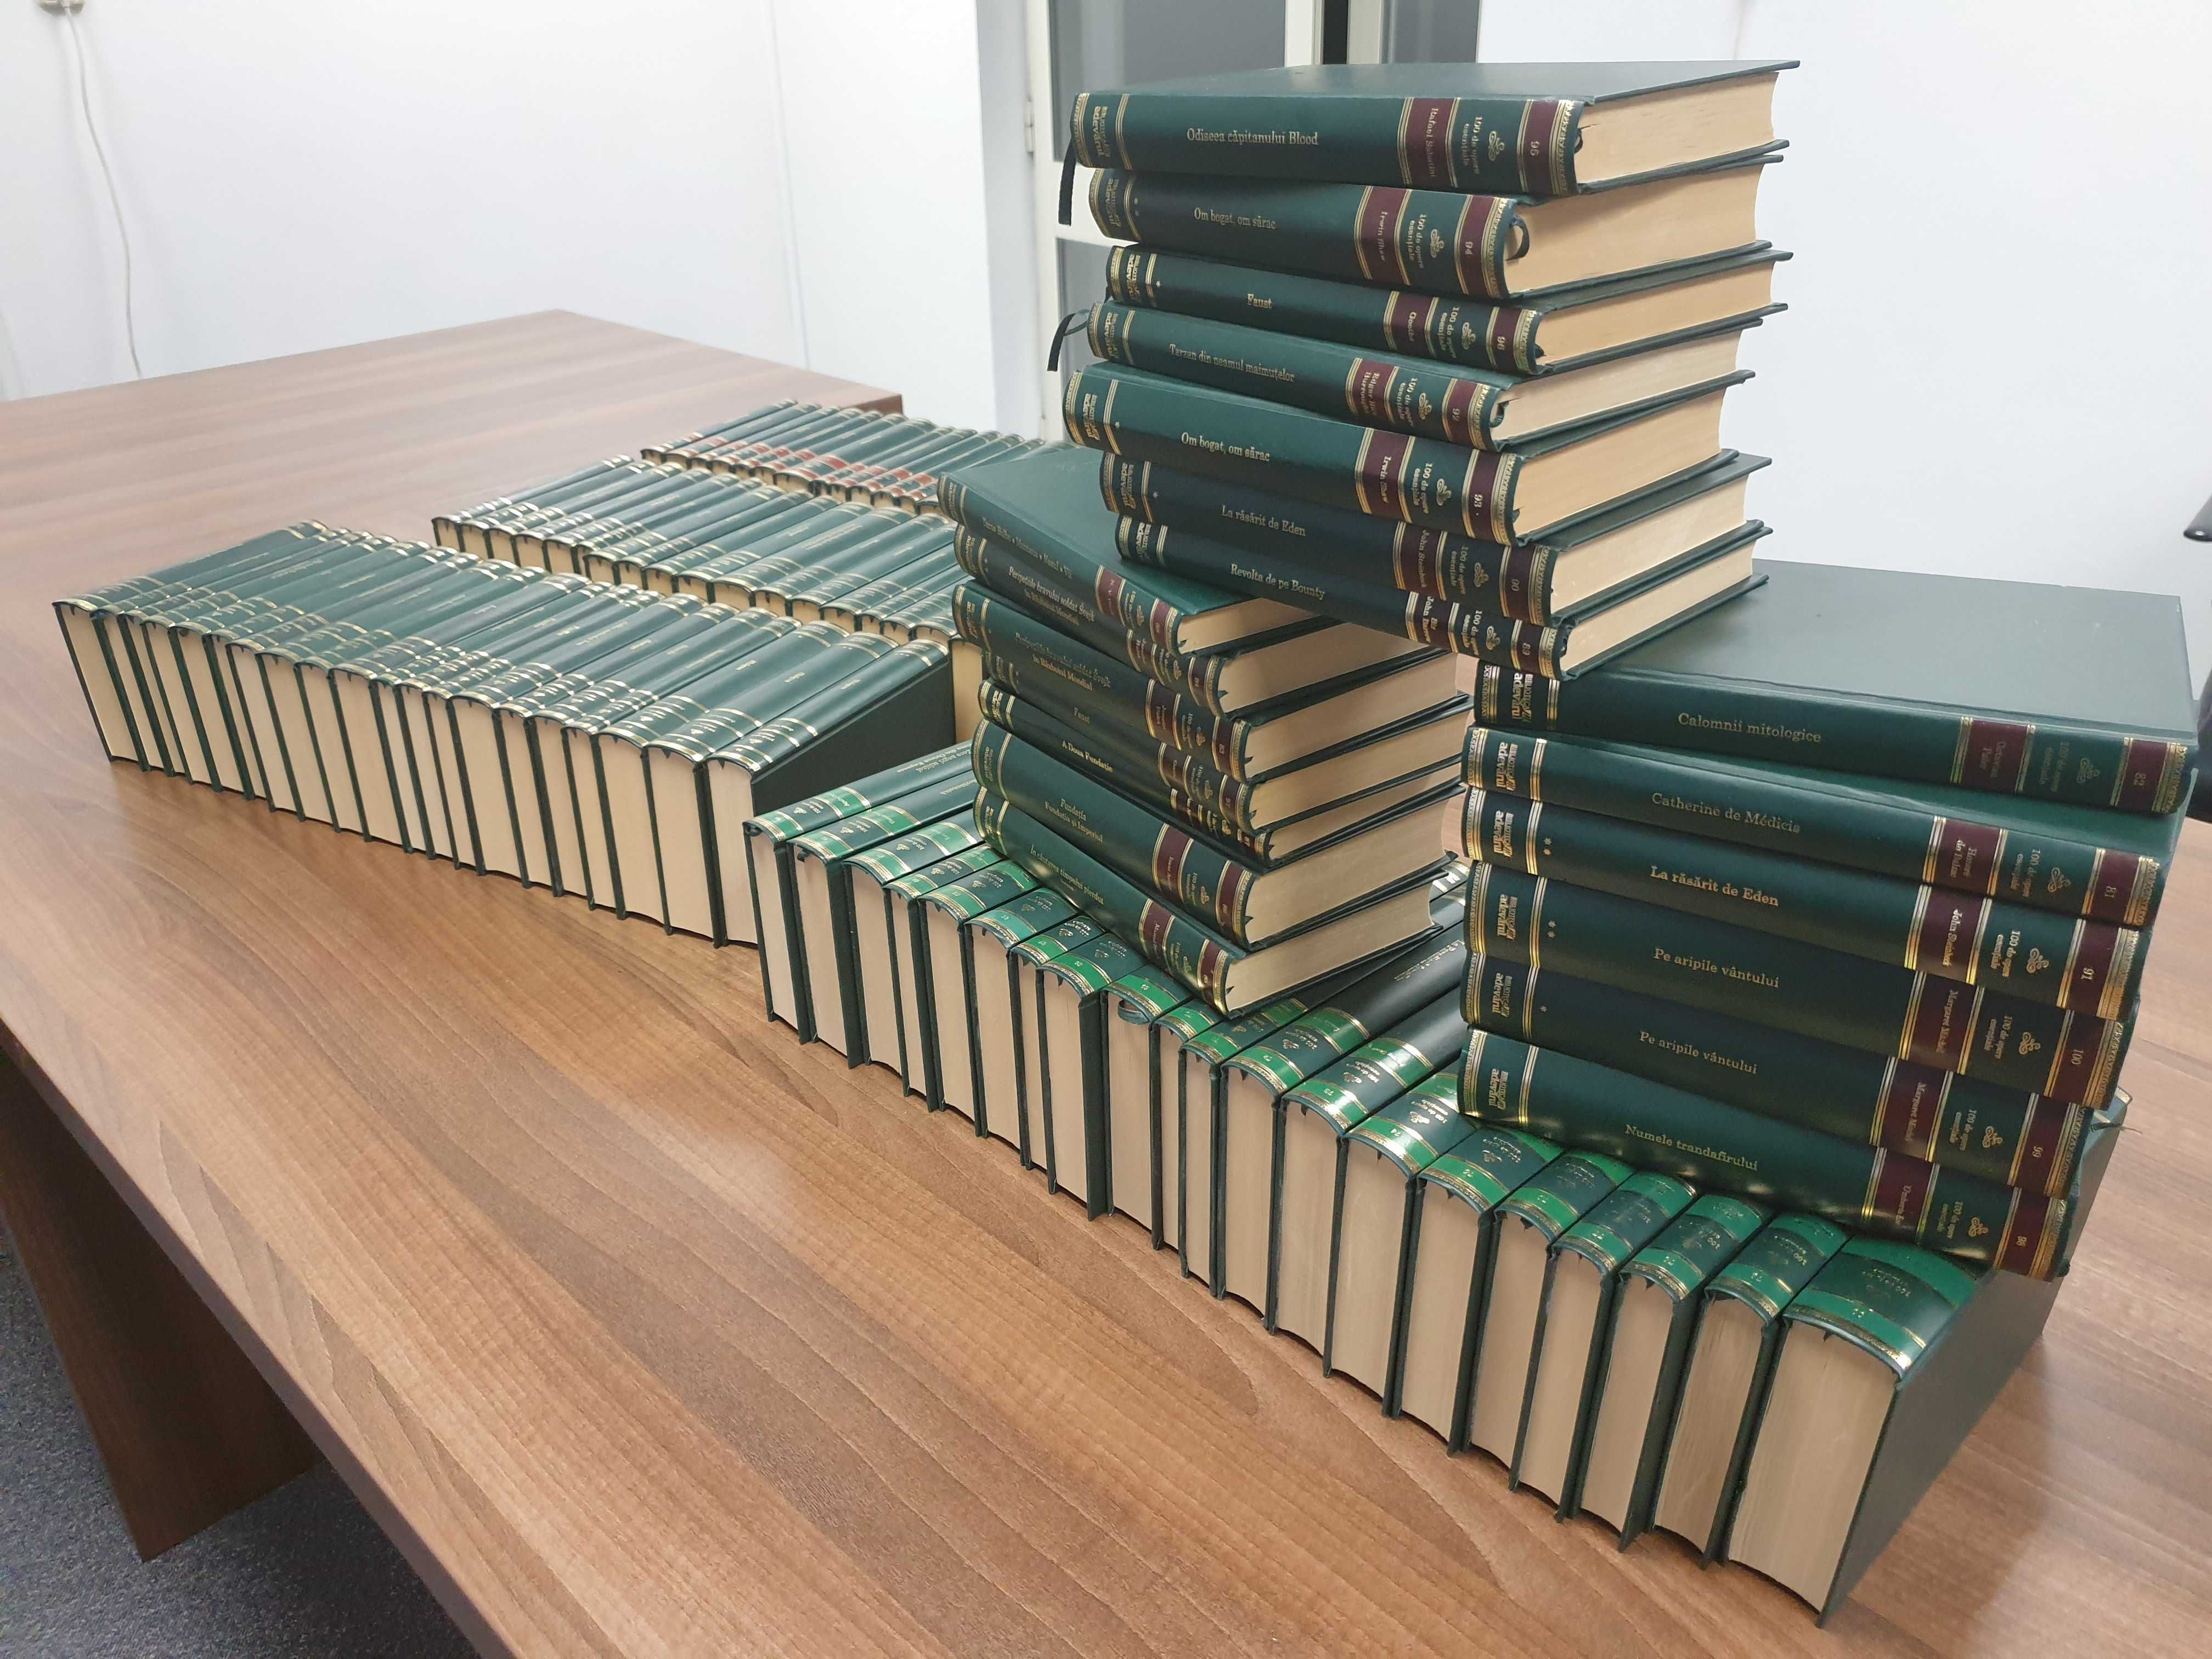 Colectia "Adevarul verde" - 100 opere esentiale